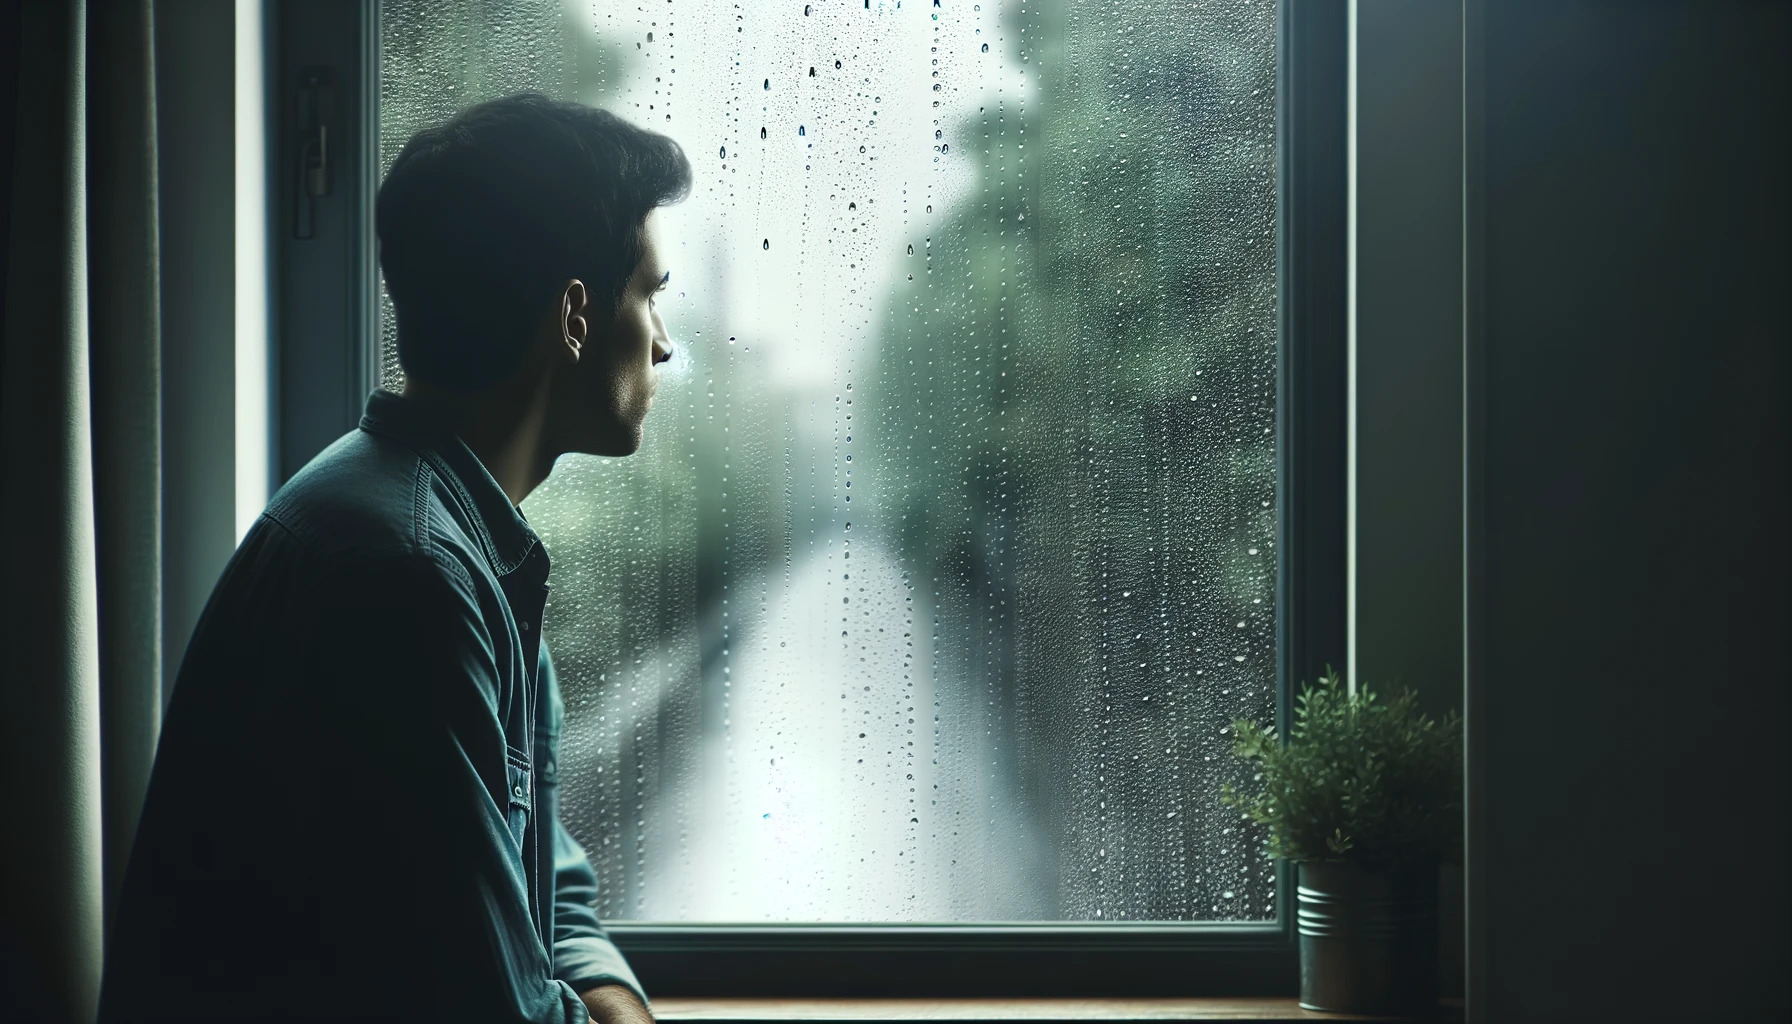 Silhouette d'une personne regardant pensivement à travers une fenêtre avec des gouttes de pluie, évoquant la réflexion et la mélancolie associées à la dépression.